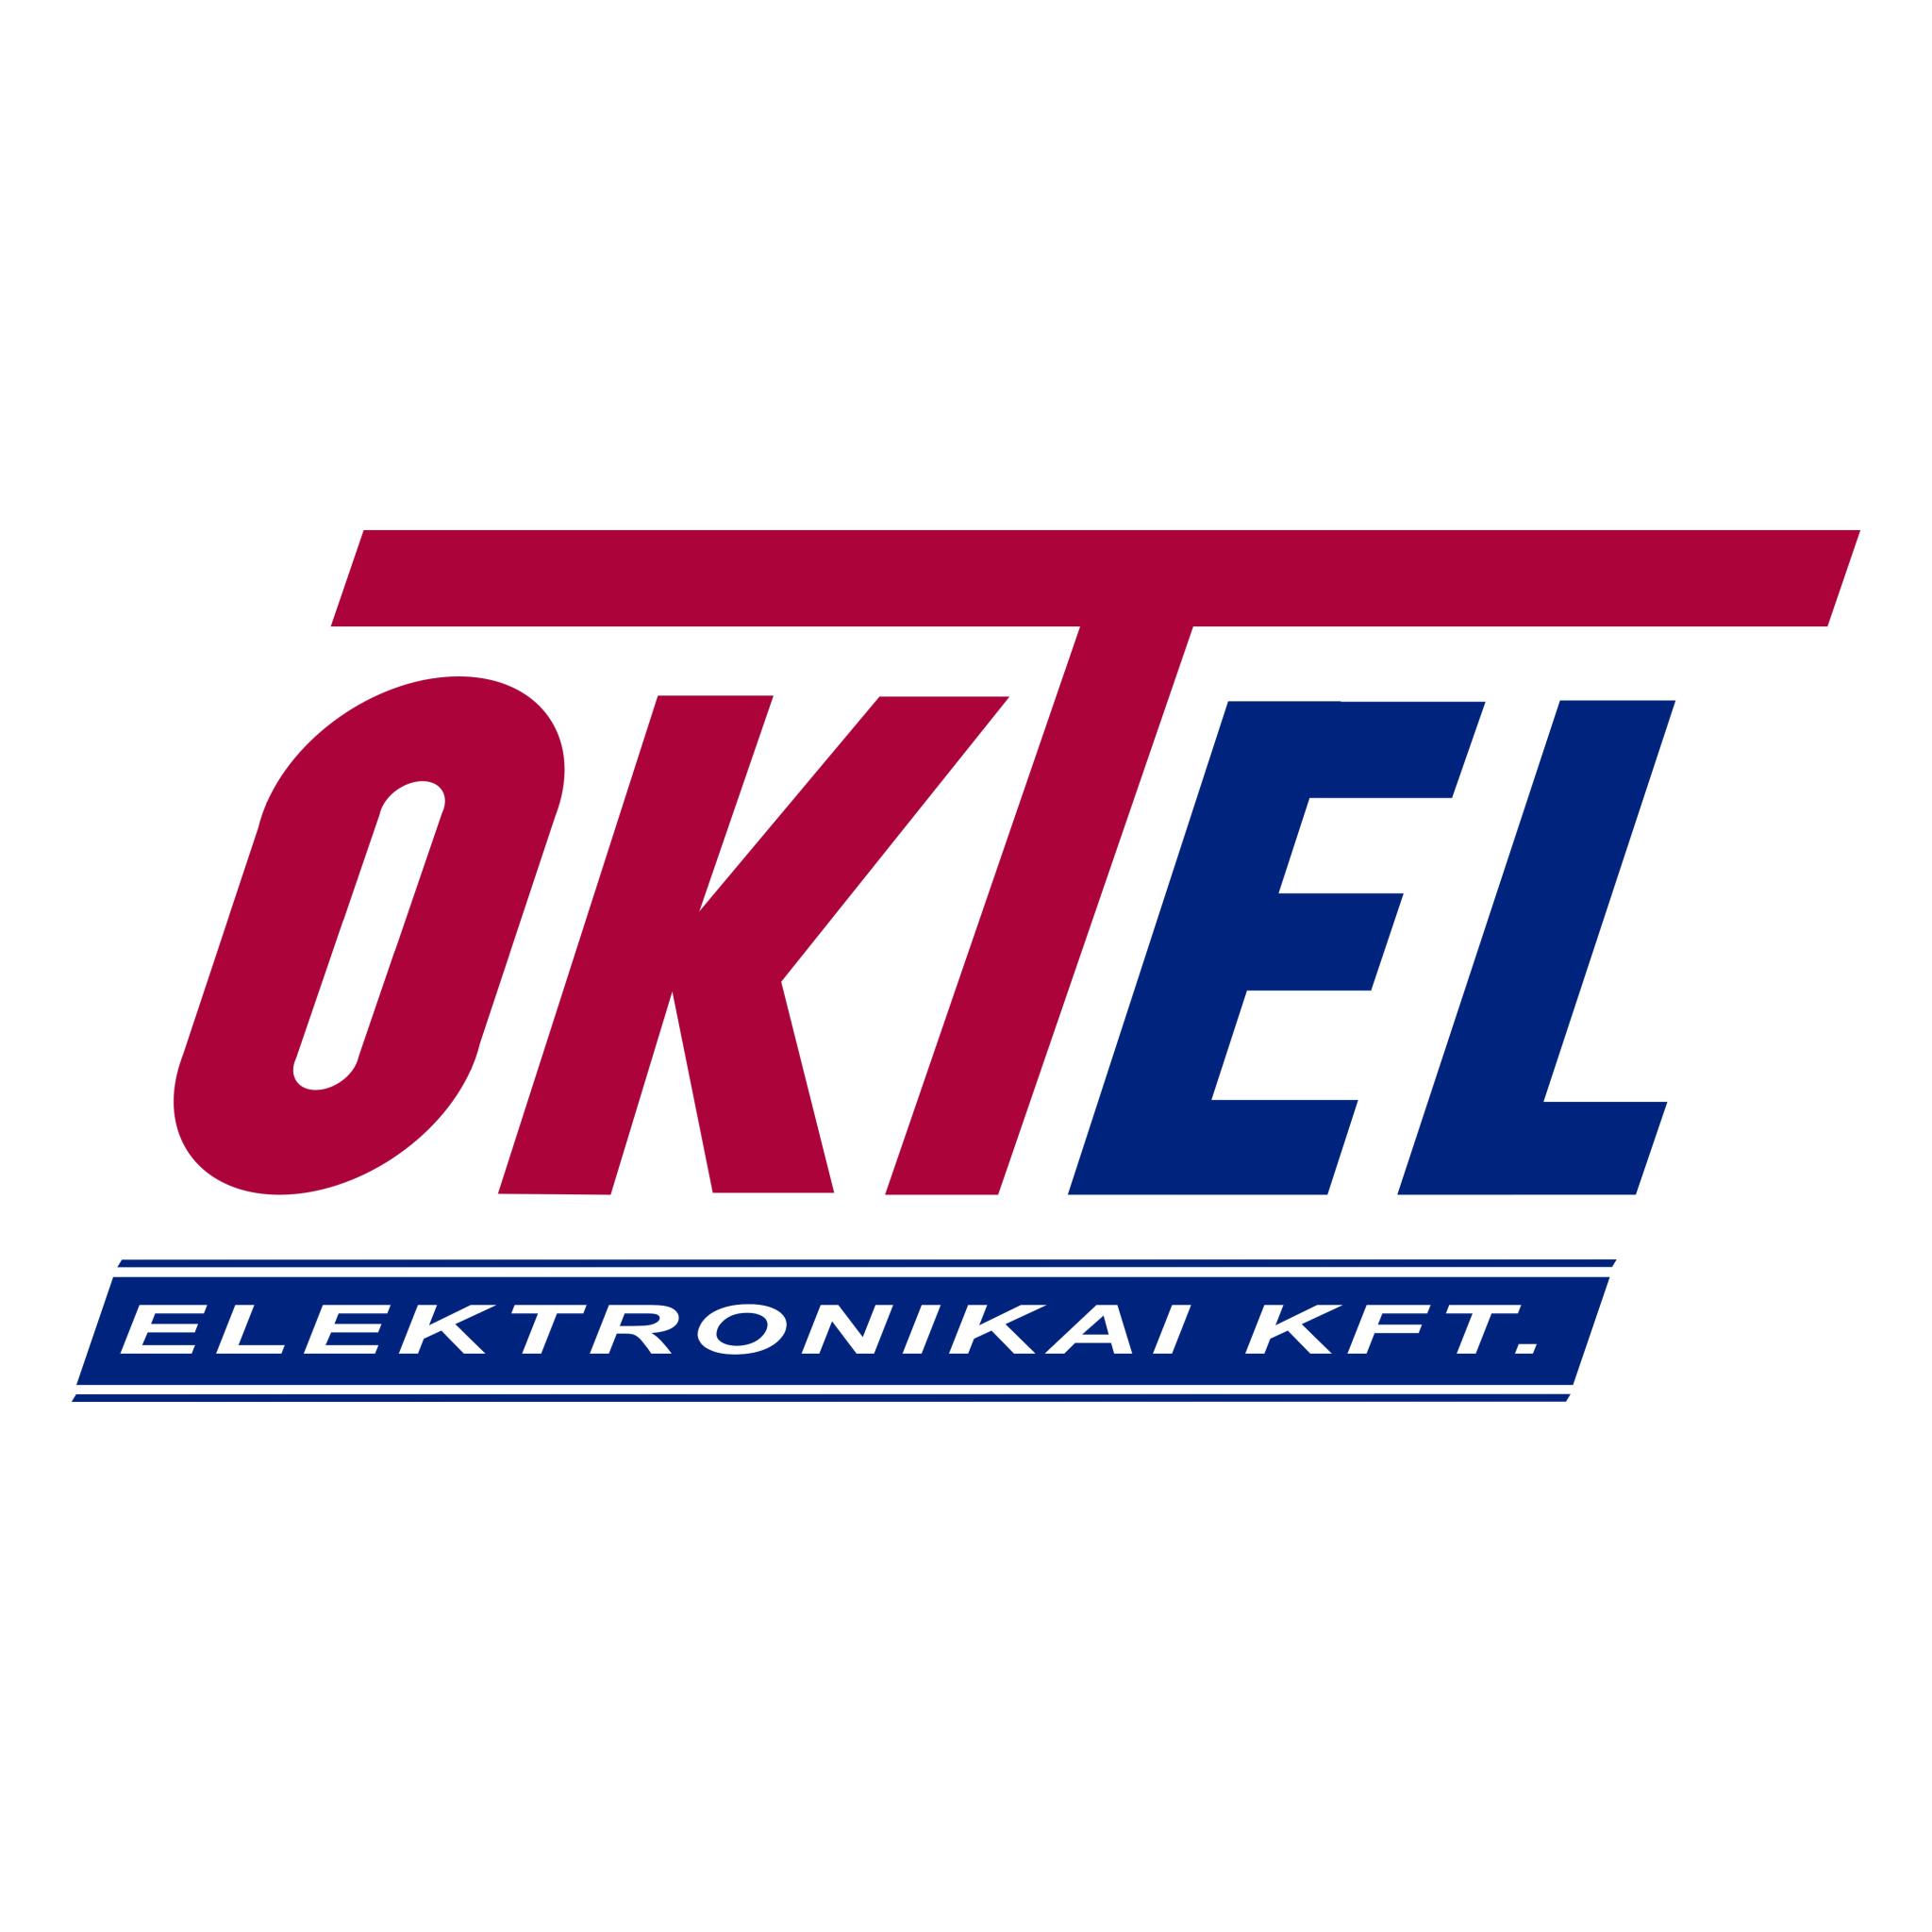 /Oktel logo.jpg